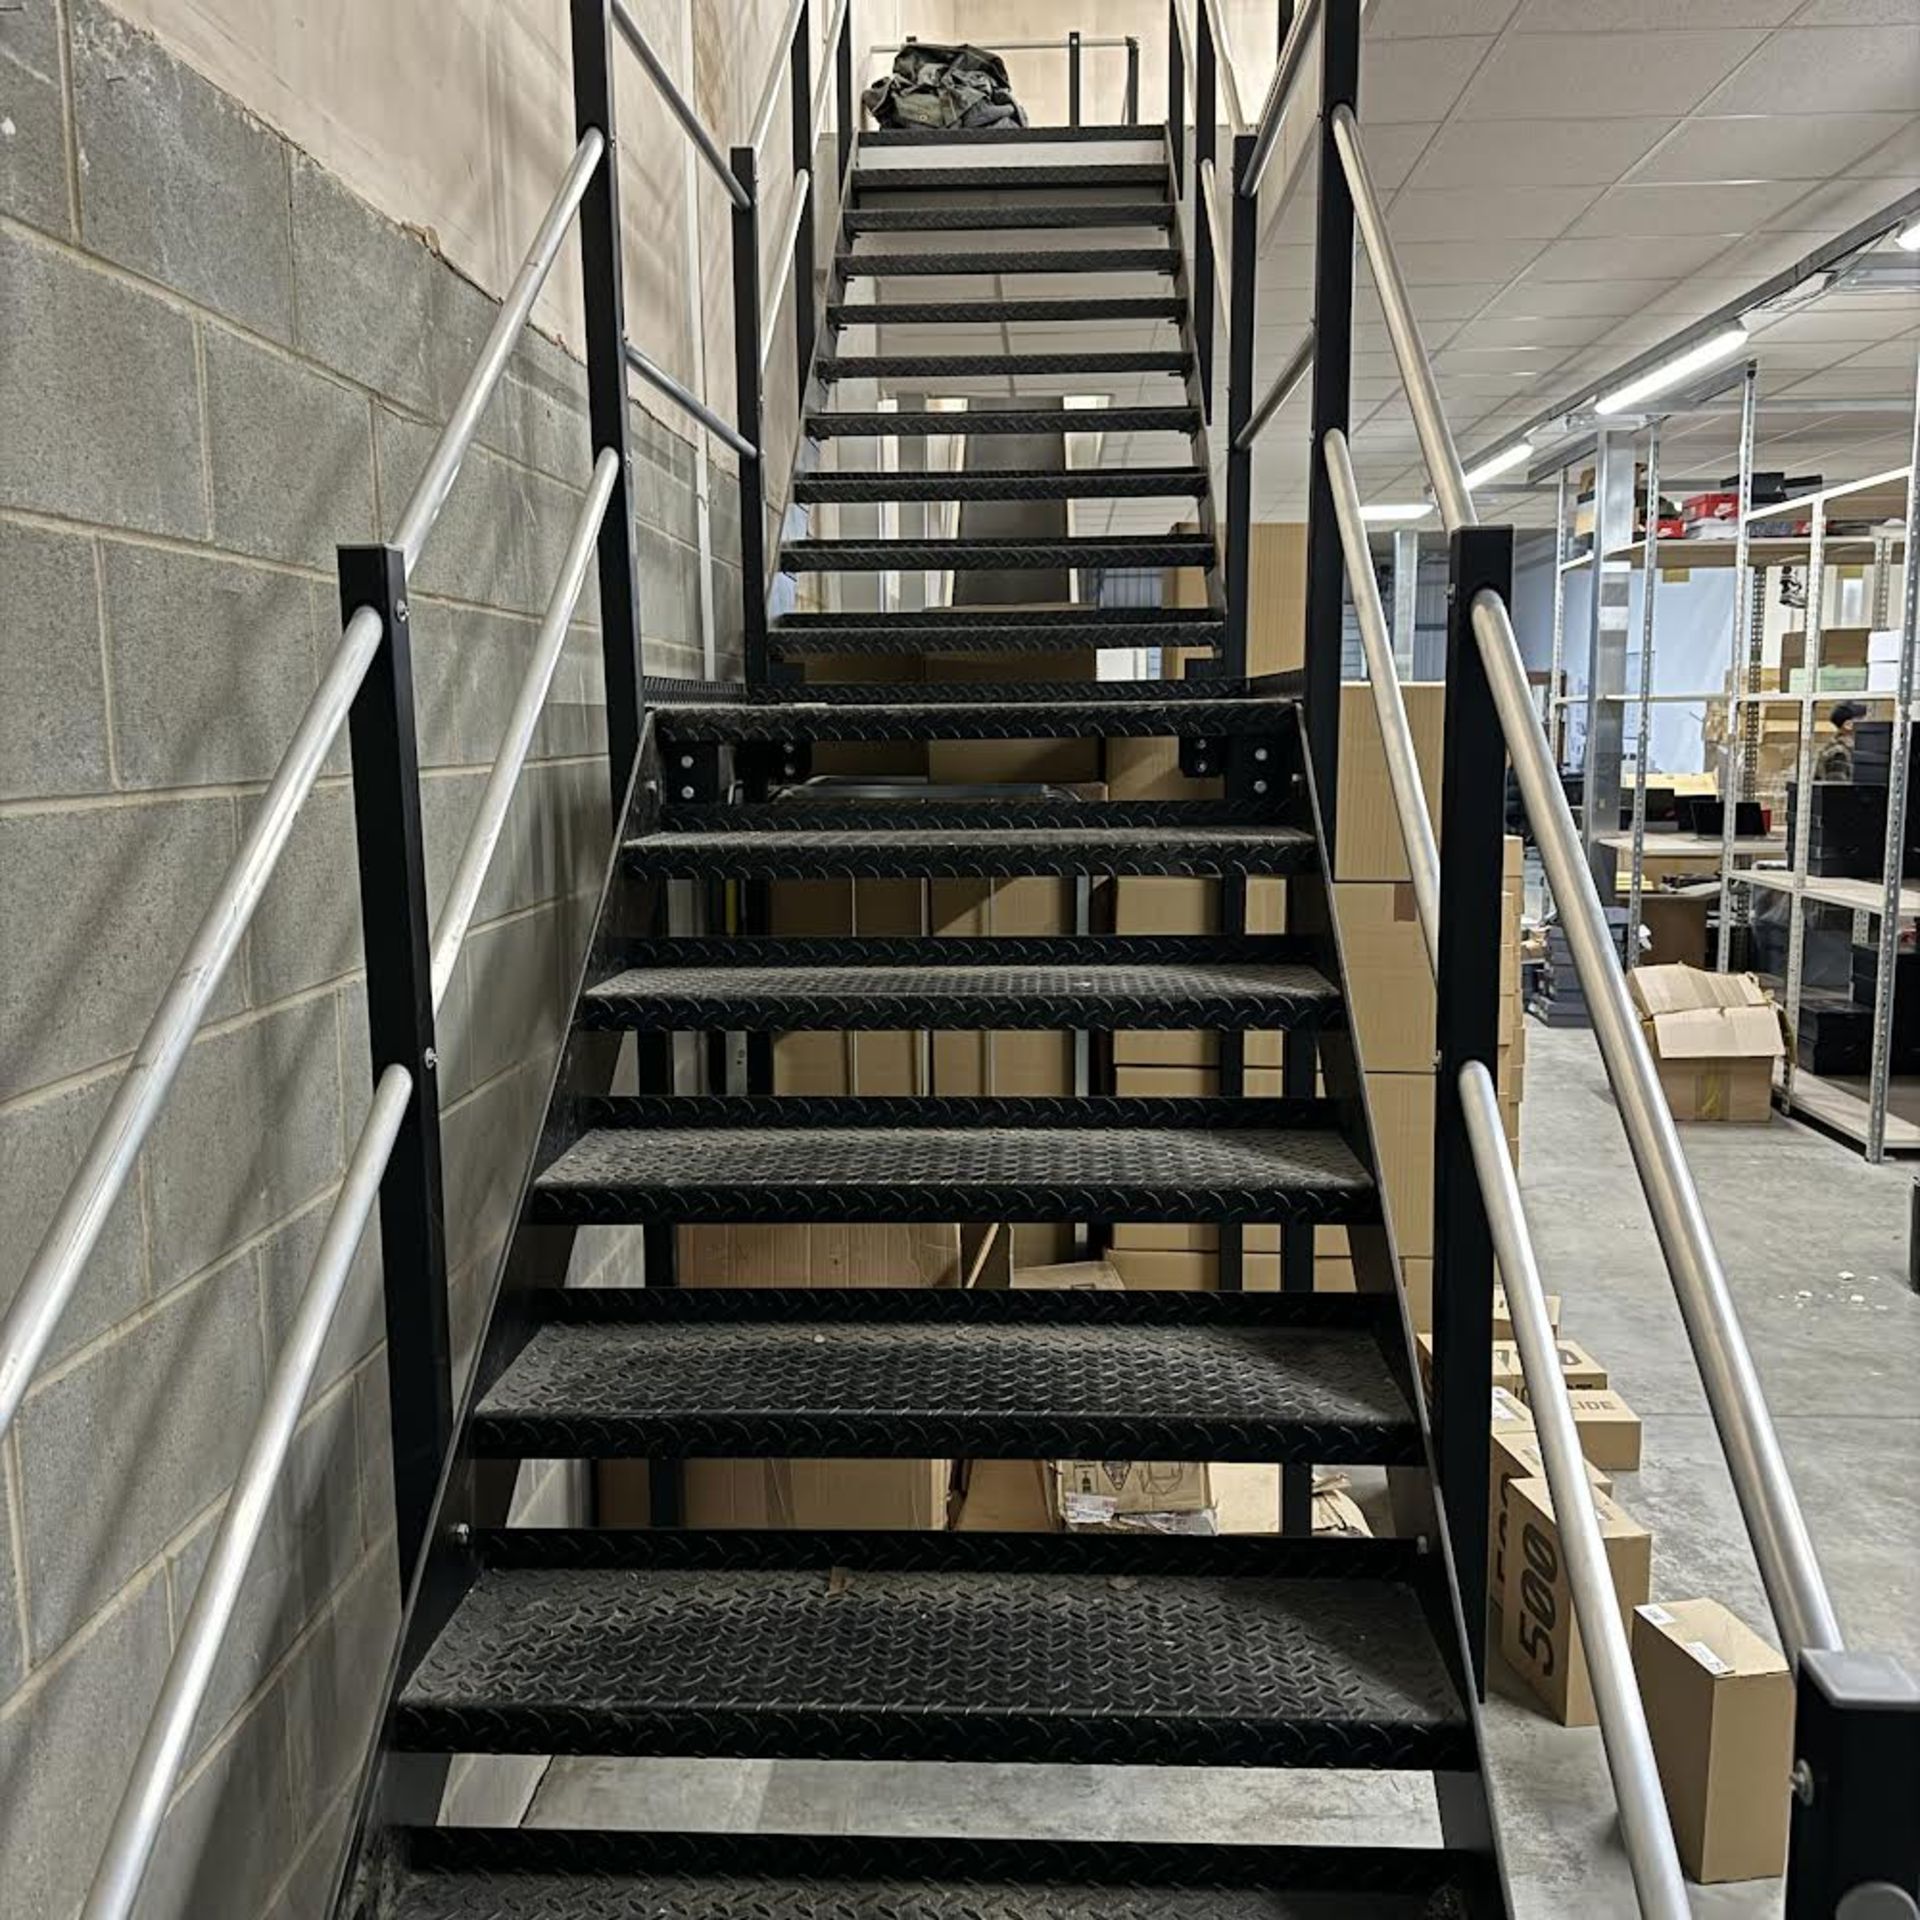 17 x 22m Mezzanine Floor - Staircase & Conveyorbelt - Image 3 of 3